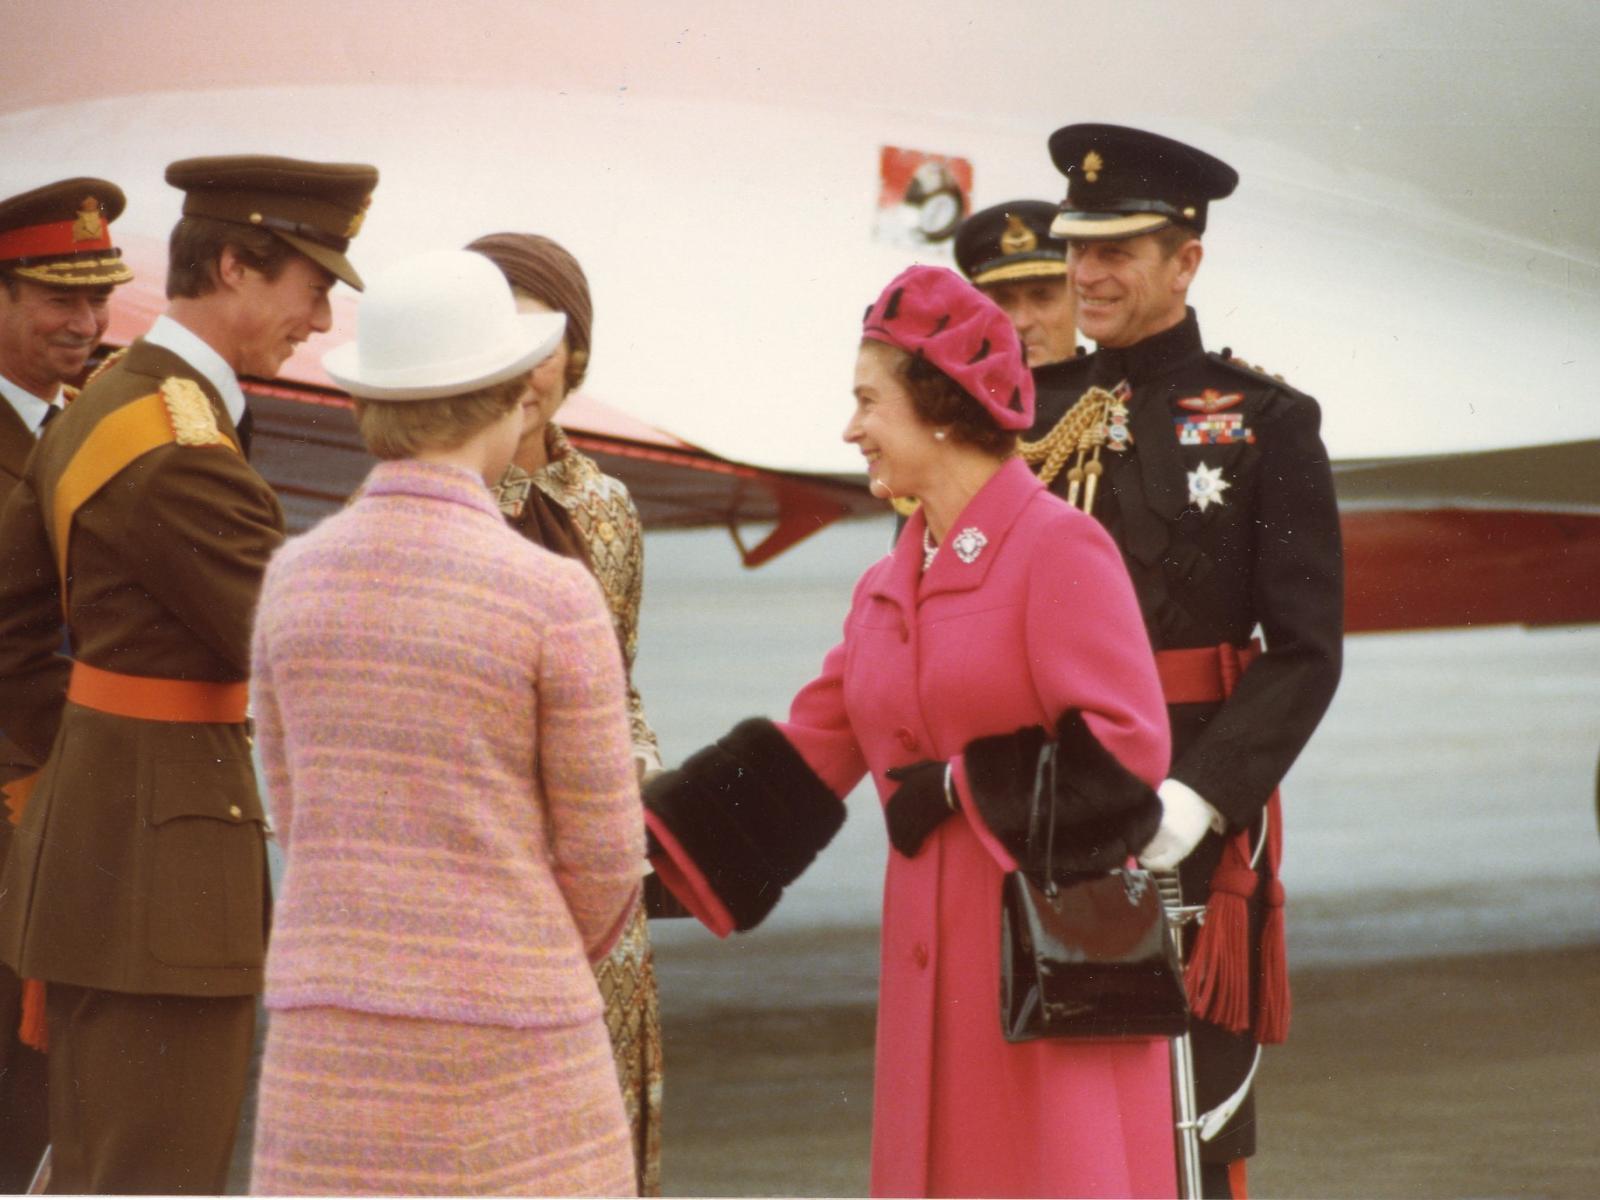 D'Kinnigin Elisabeth II op Visitt zu Lëtzebuerg